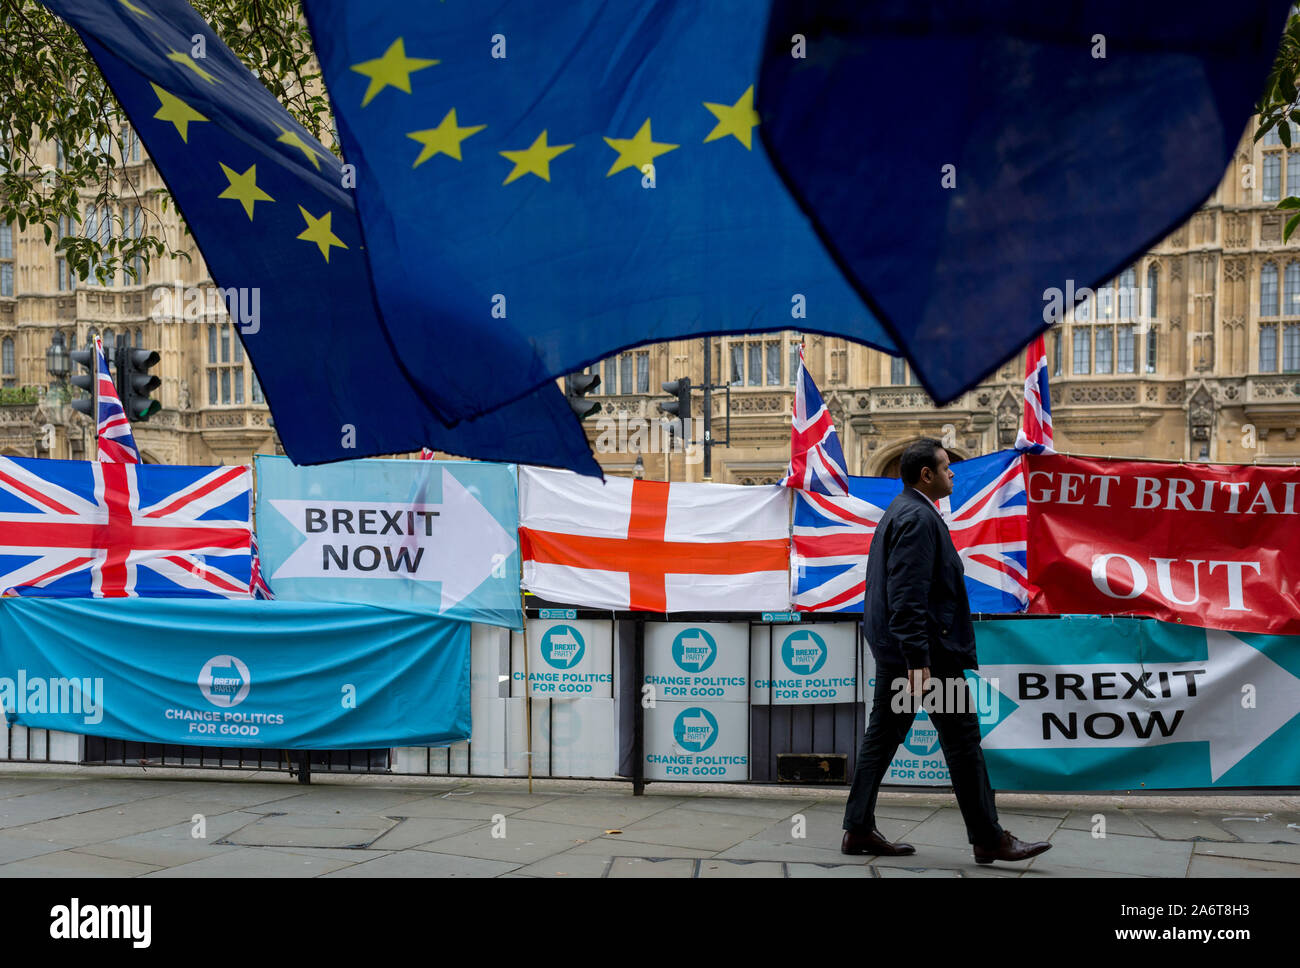 El día que la UE en Bruselas acordaron en principio Brexit prorrogar hasta el 31 de enero de 2020 (aka "Flextension") y no el 31 de octubre de 2019, un partido Brexit paseos peatonales pasado banderas y pancartas durante una protesta Brexit fuera del parlamento, el 28 de octubre de 2019, en Westminster, Londres, Inglaterra. Foto de stock